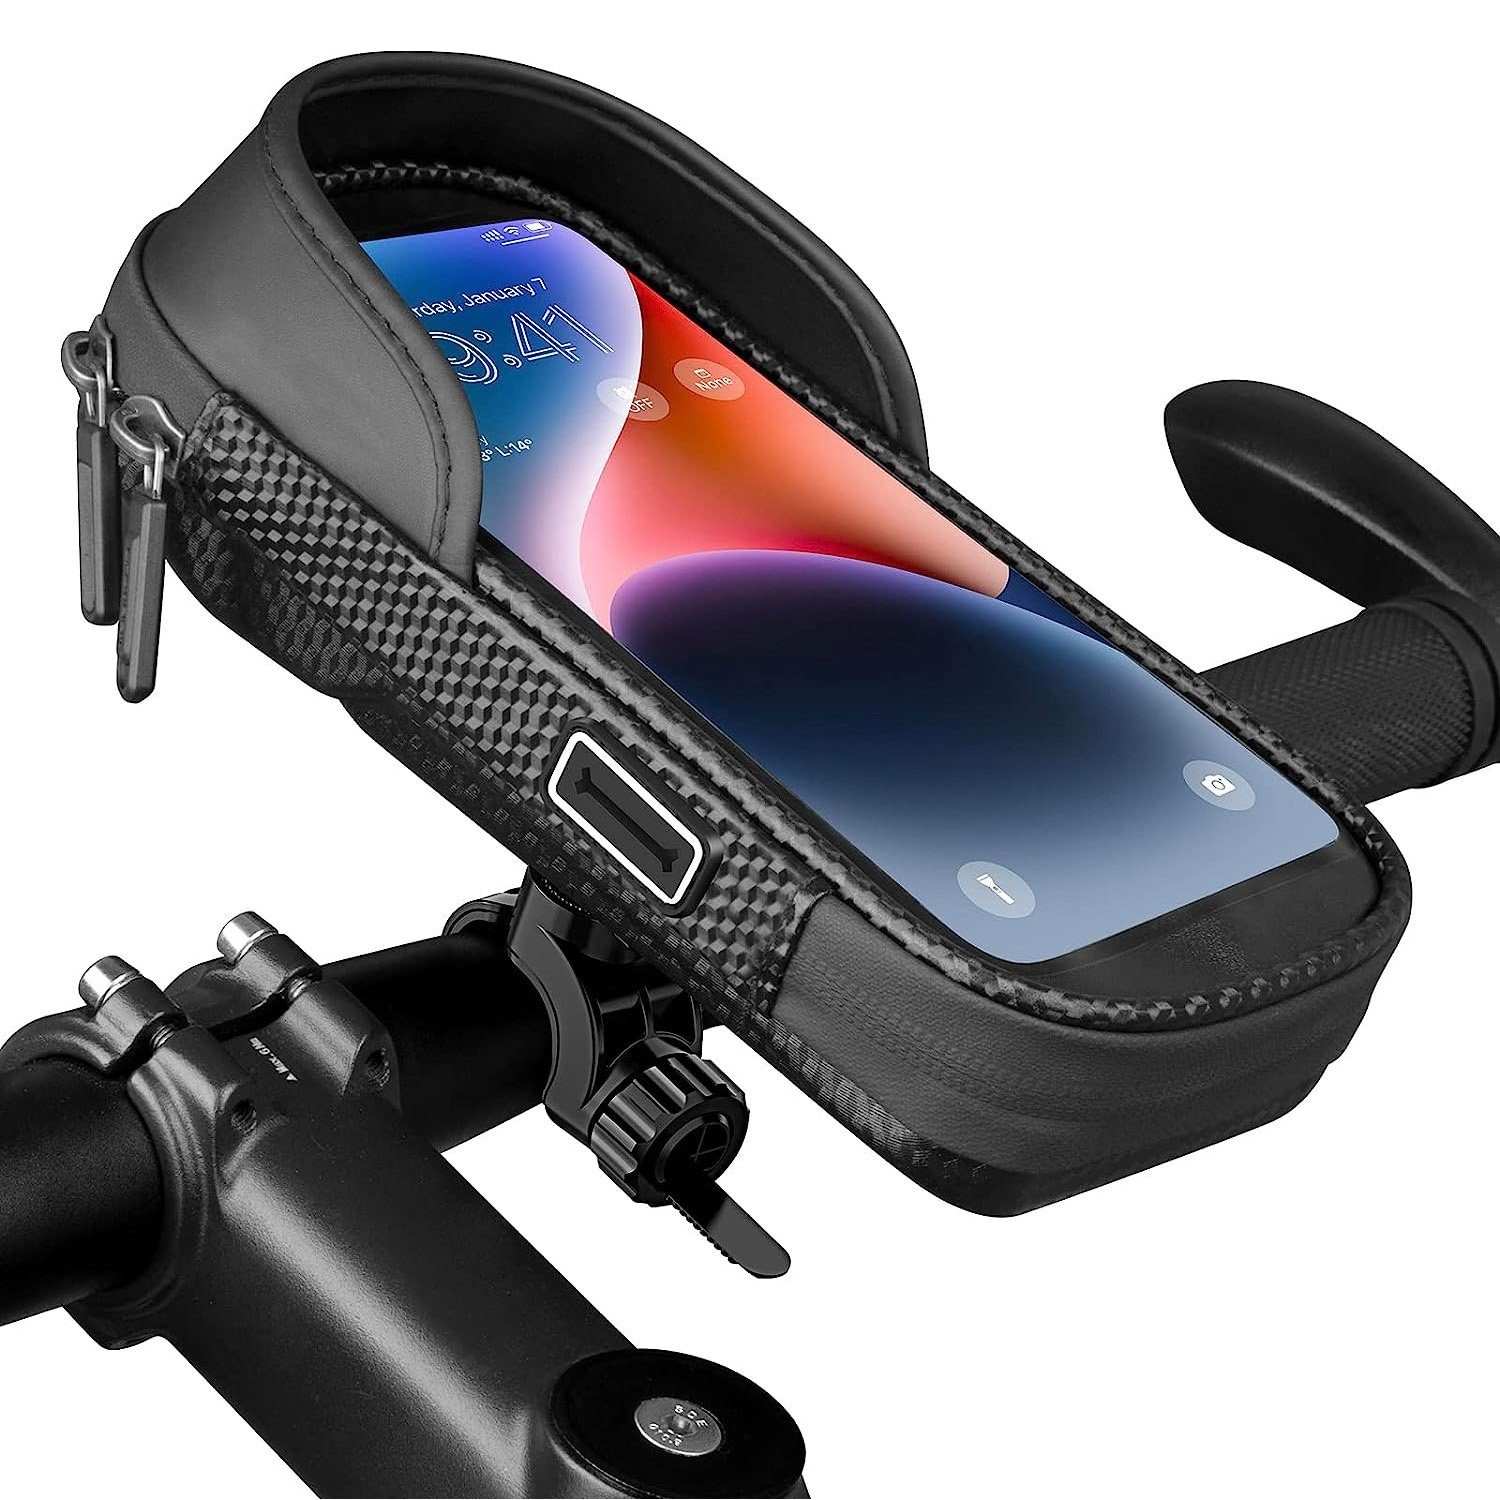 Handyhalterung Fahrrad wasserdicht Lenkertasche für Smartphone  Fahrradtasche MTB